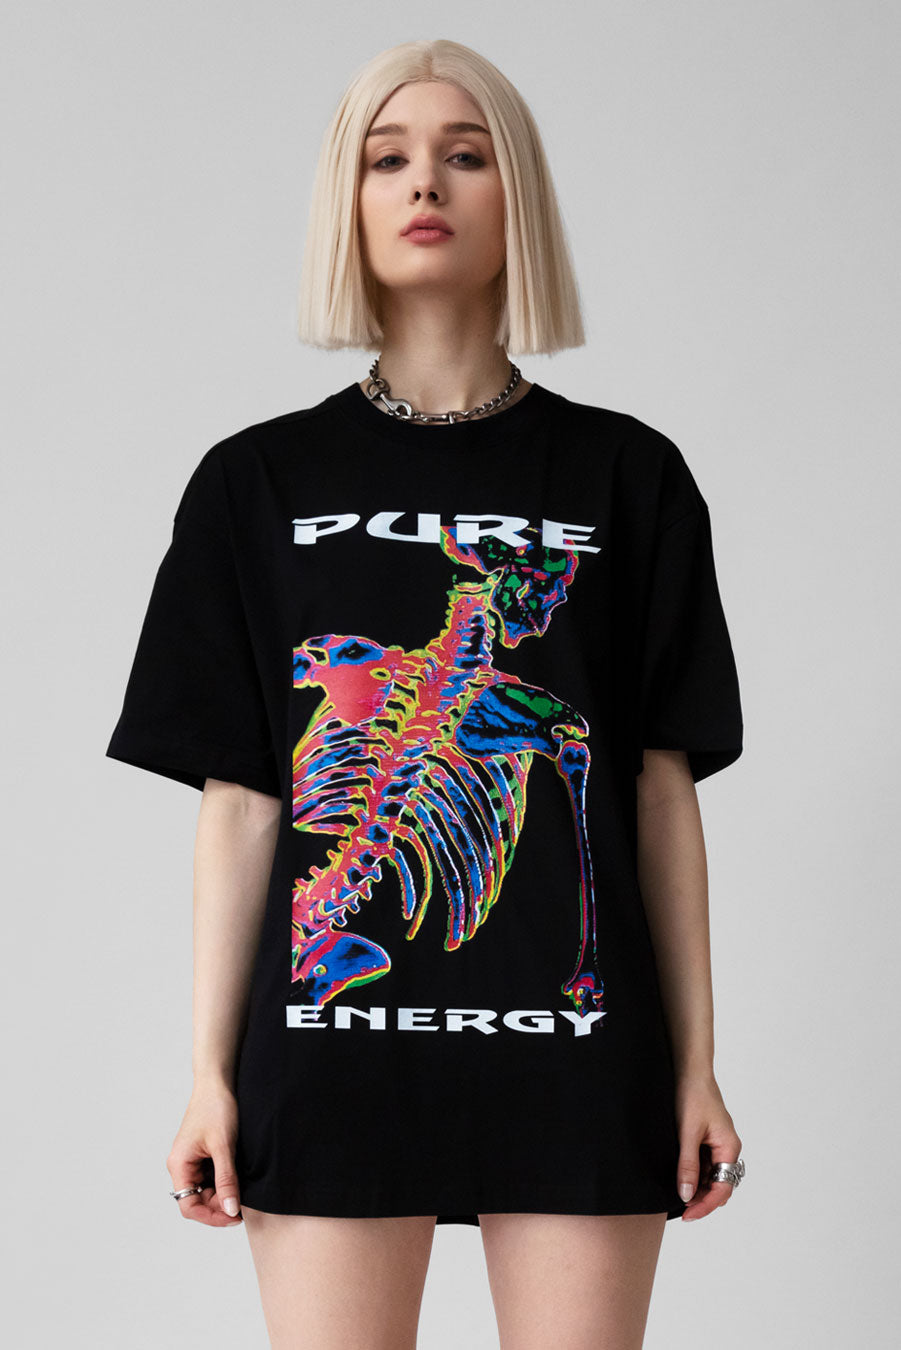 PURE ENERGY Tshirt